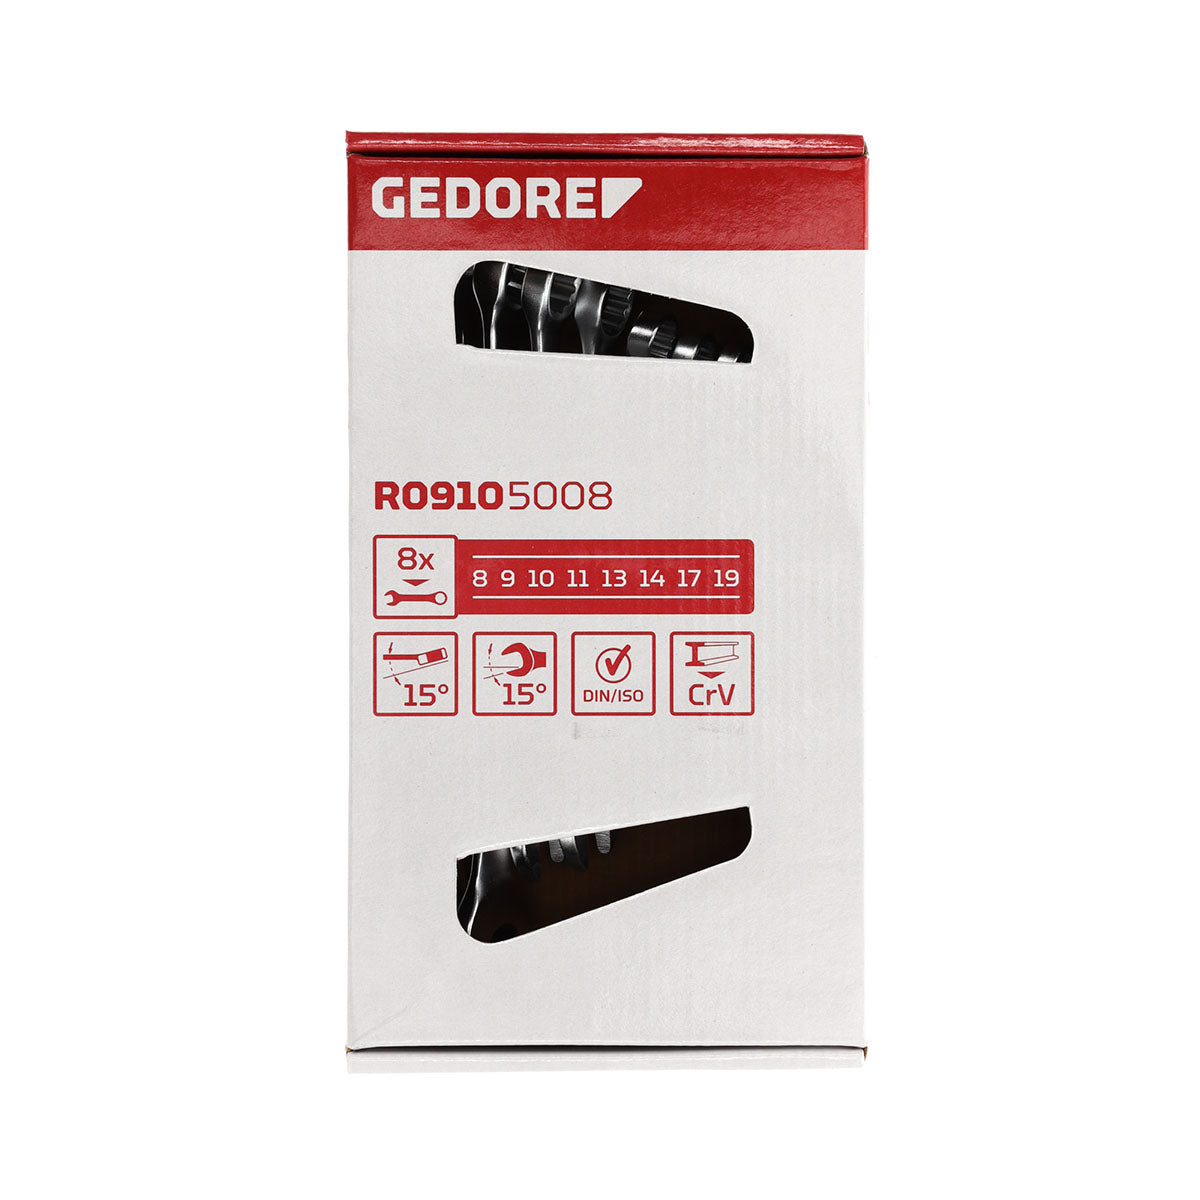 GEDORE red R09105008 - Juego de llaves combinadas, 8-19 mm, 8 piezas (3300988)